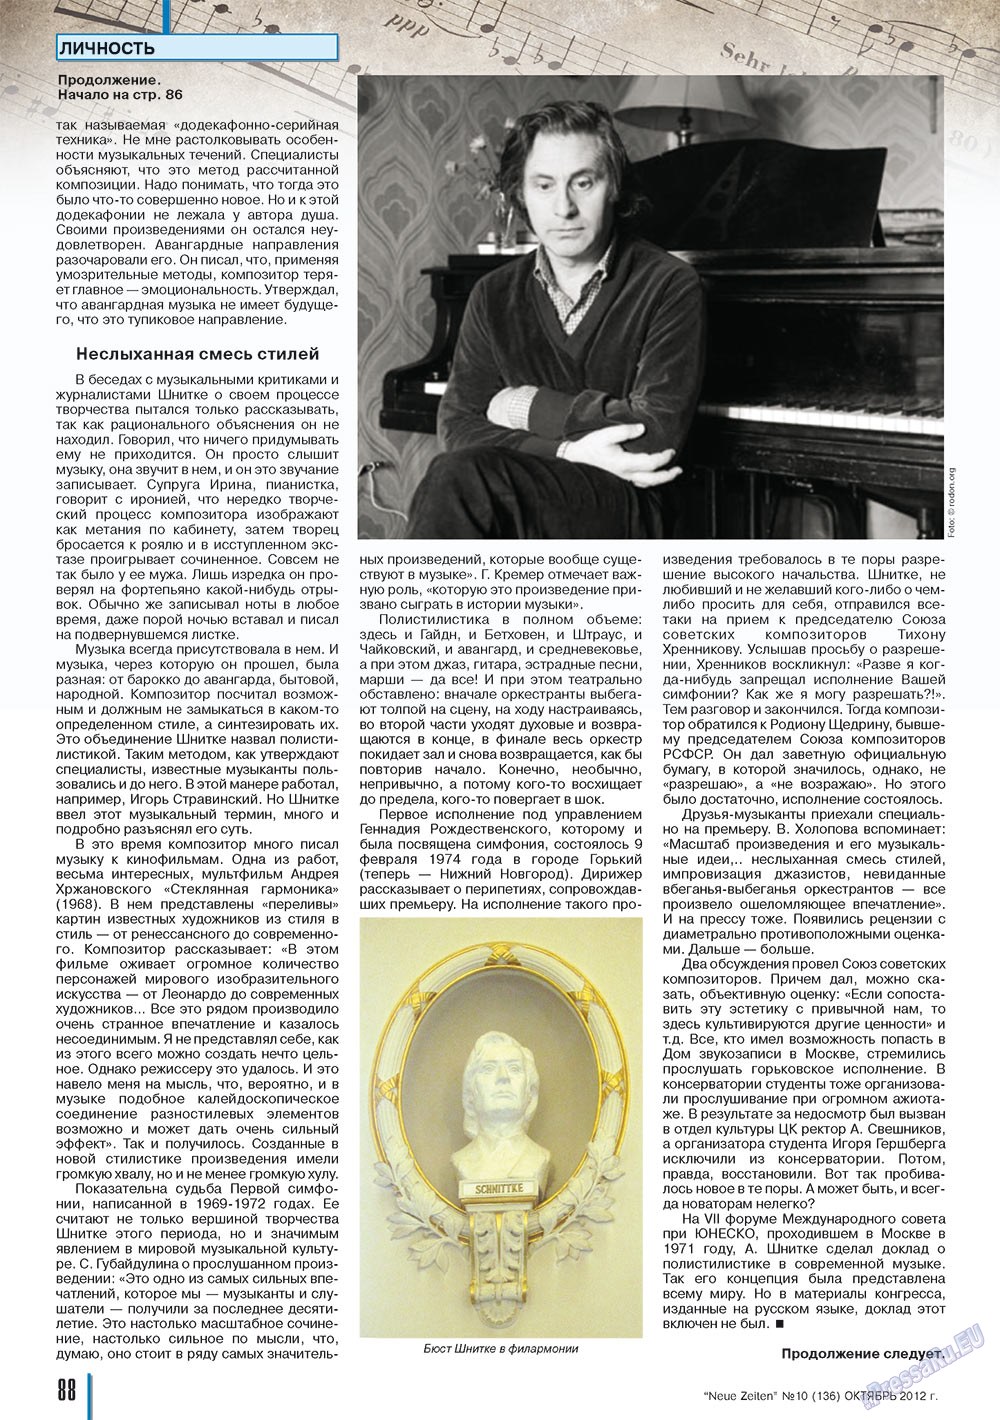 Neue Zeiten, журнал. 2012 №10 стр.88